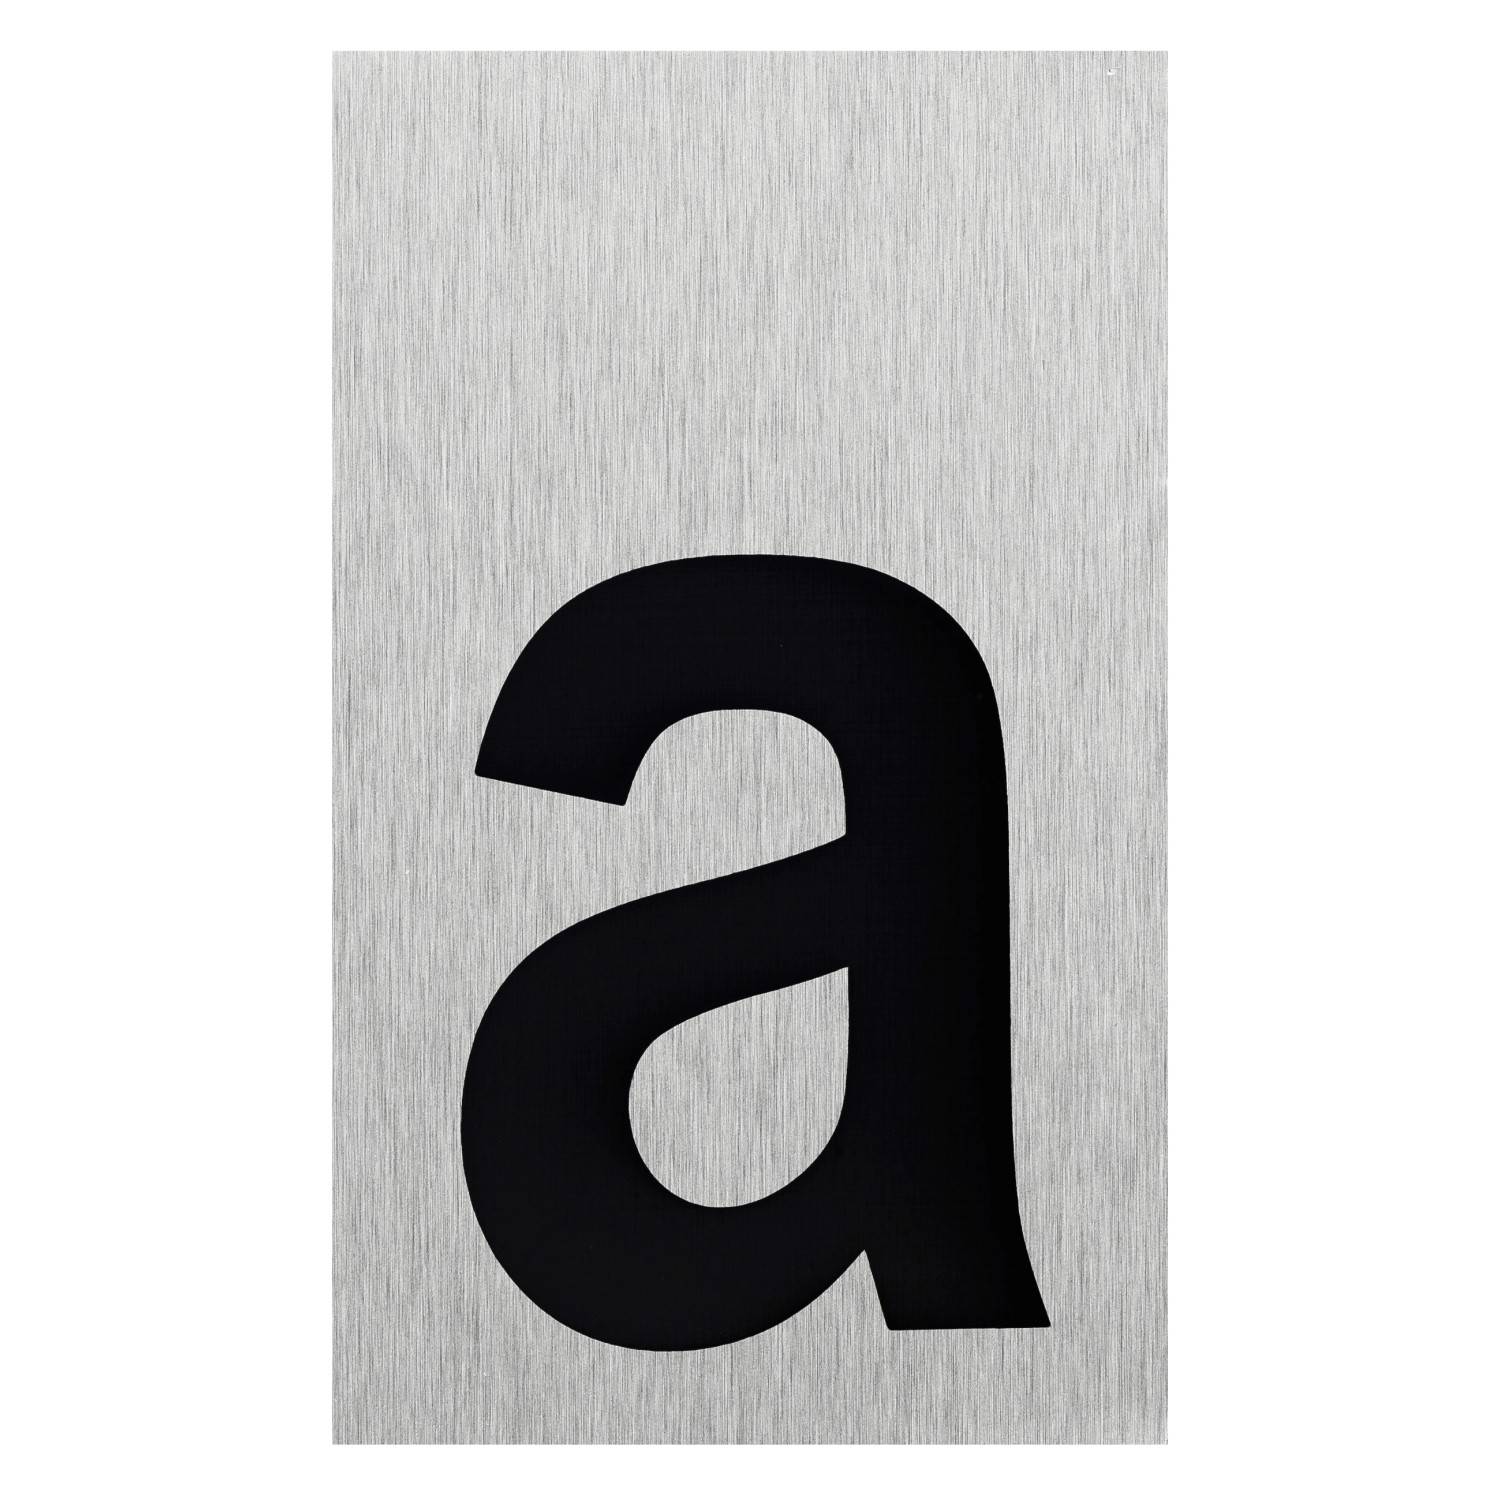 Buchstaben-Schild Aluminium a Selbstklebend kaufen bei OBI